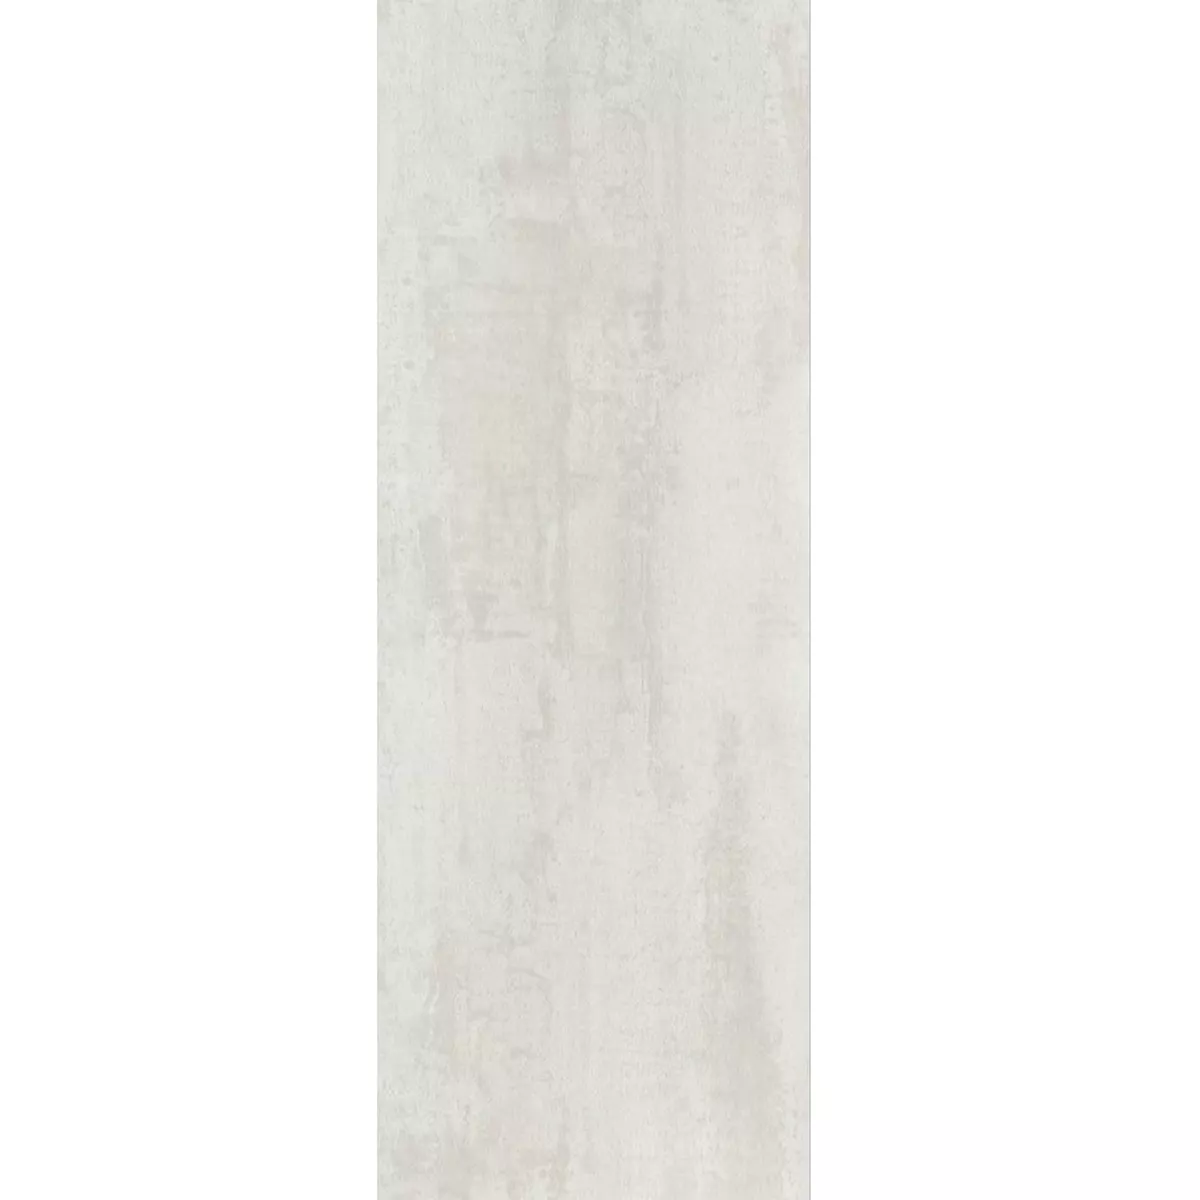 Bodenfliesen Herion Metalloptik Matt Blanco 45x90cm